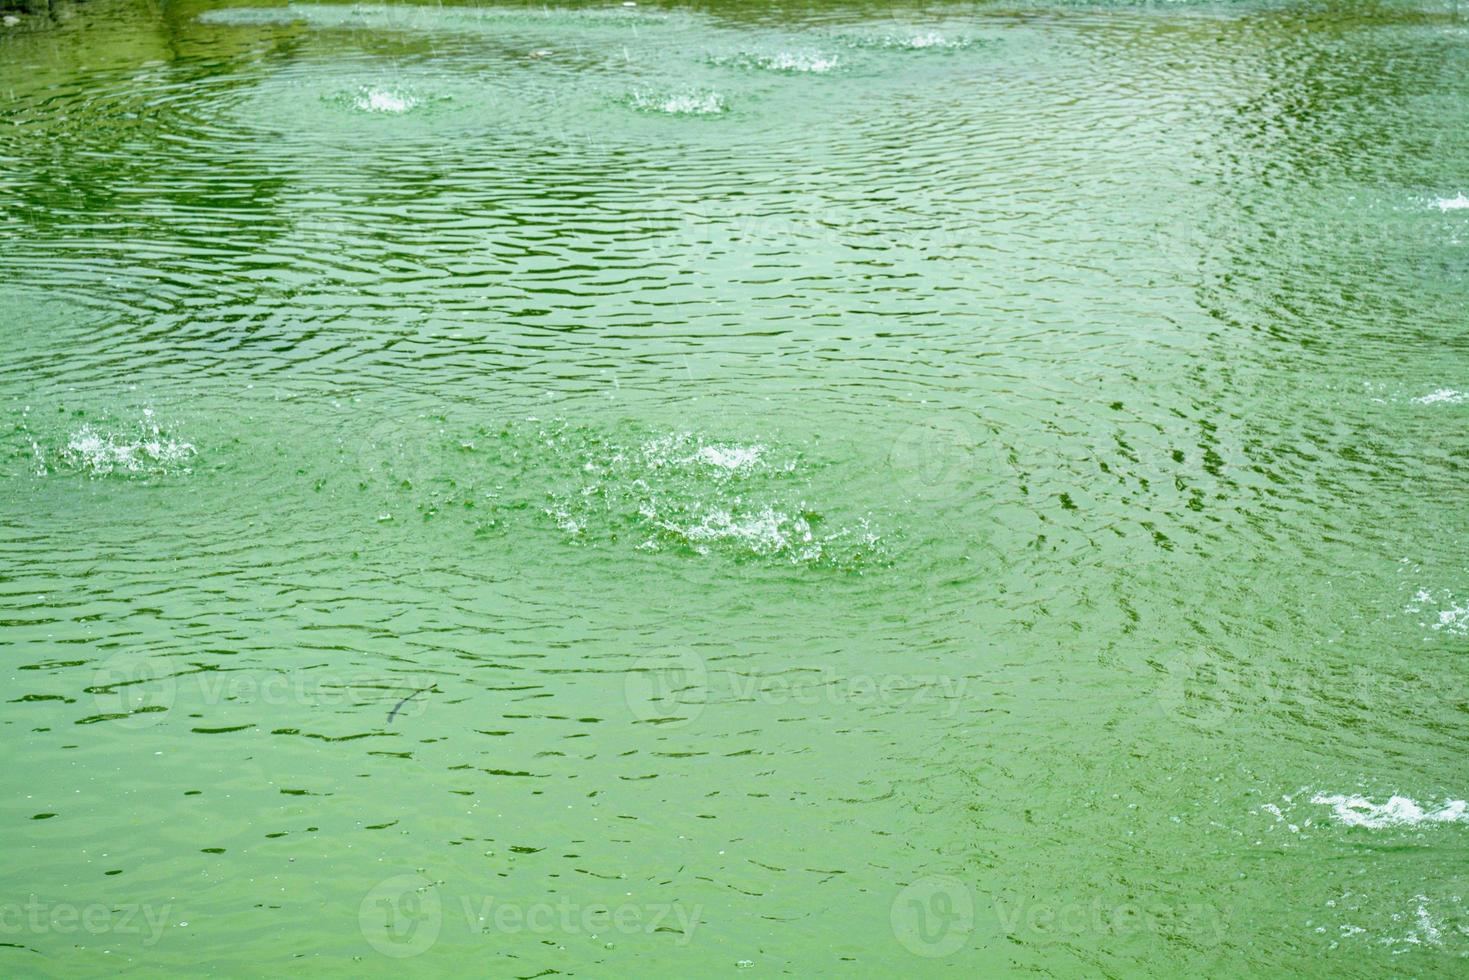 lago de la fuente de agua en el jardín pinjore foto